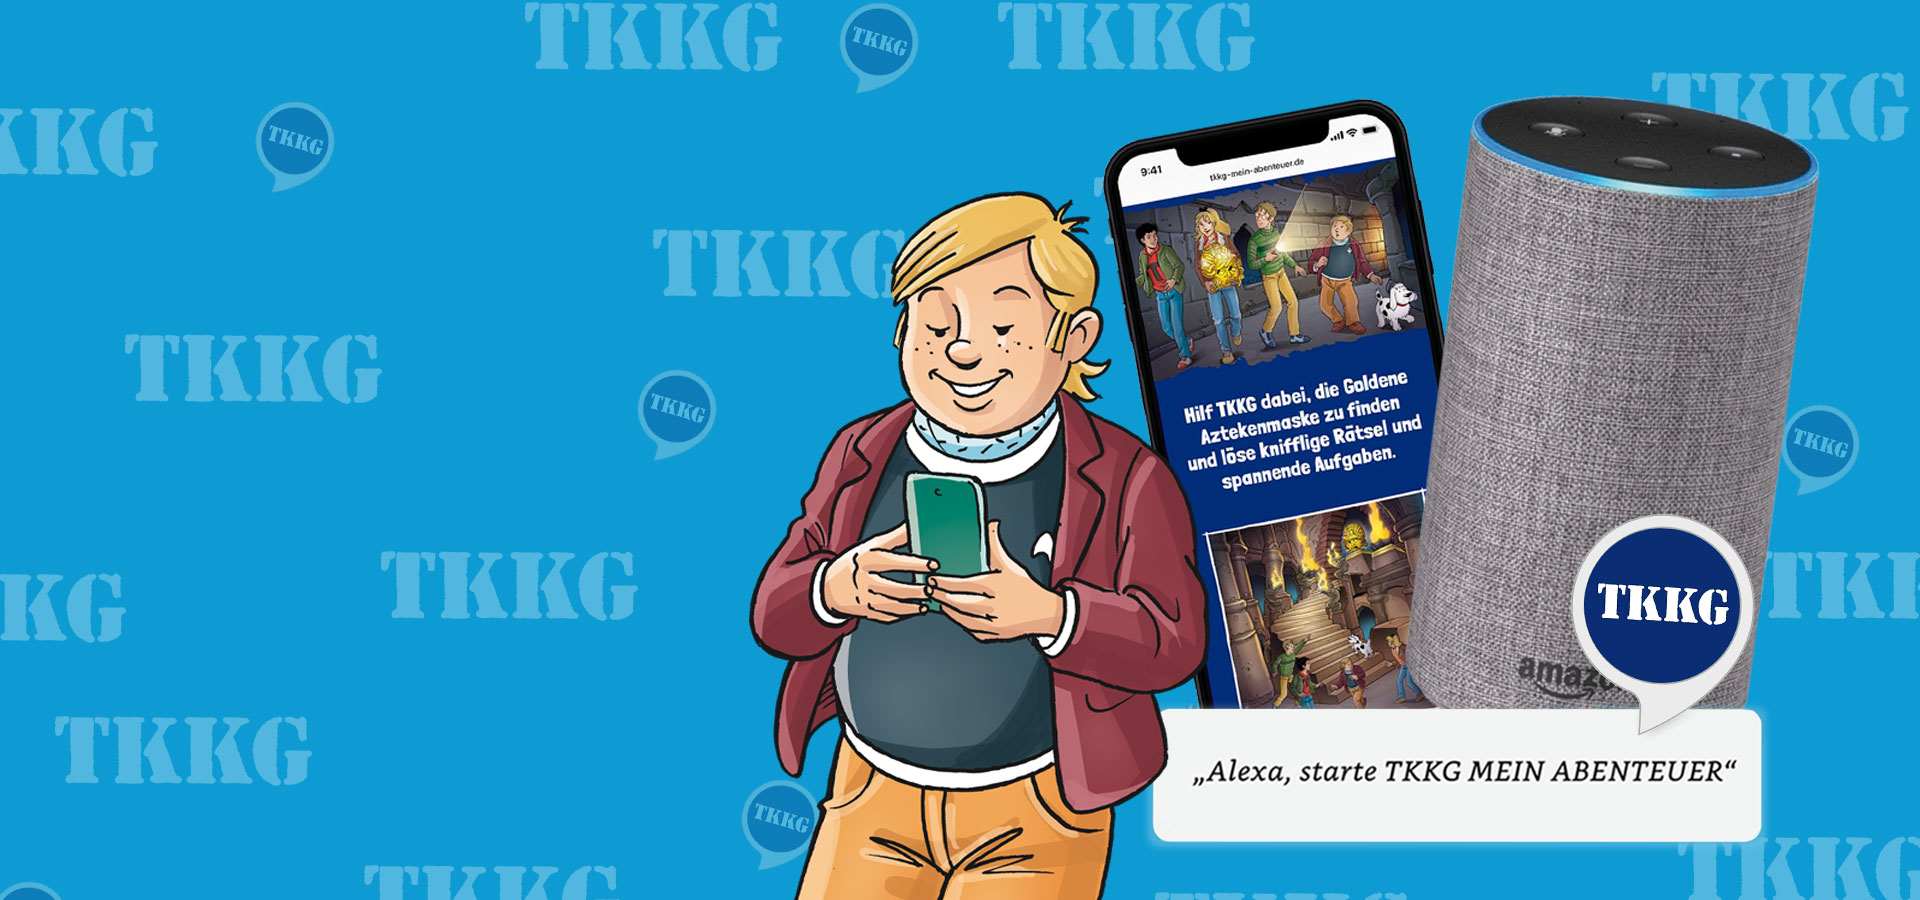 TKKG - Mein Abenteuer - Die neue interaktive Skill von TKKG!